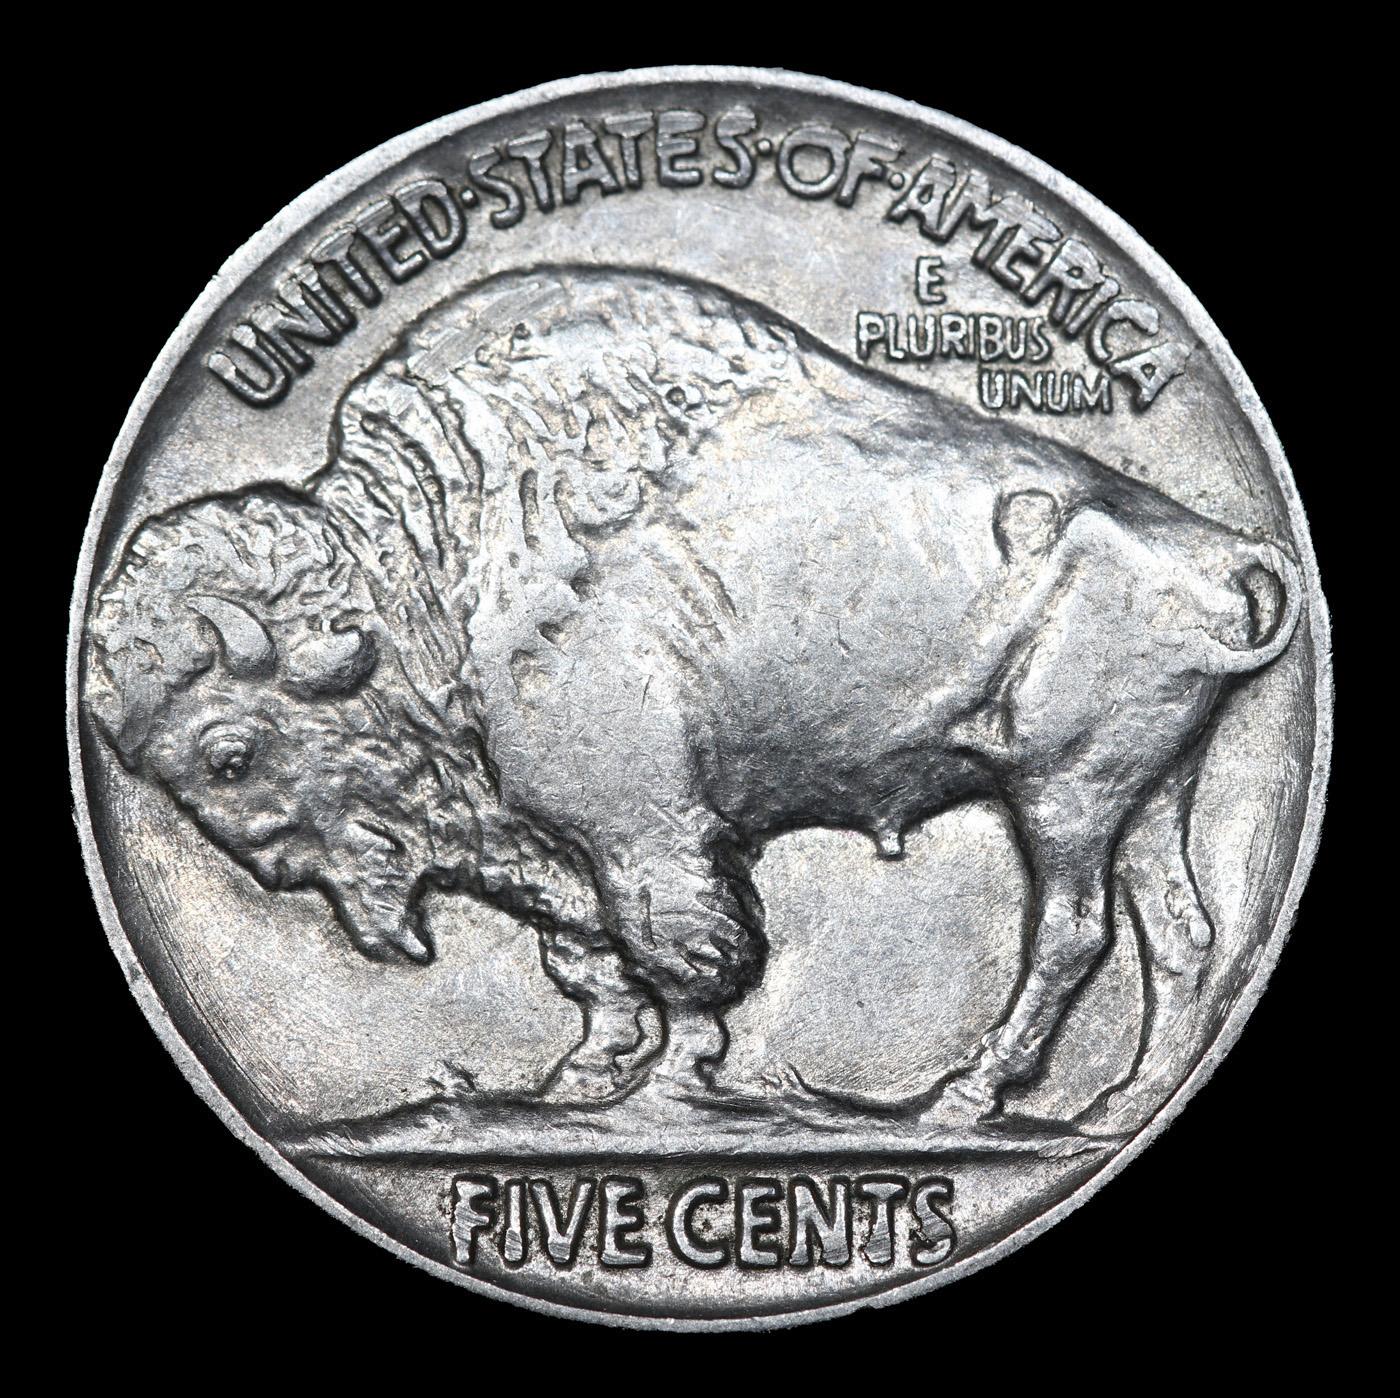 1937-p Buffalo Nickel 5c Grades Select+ Unc